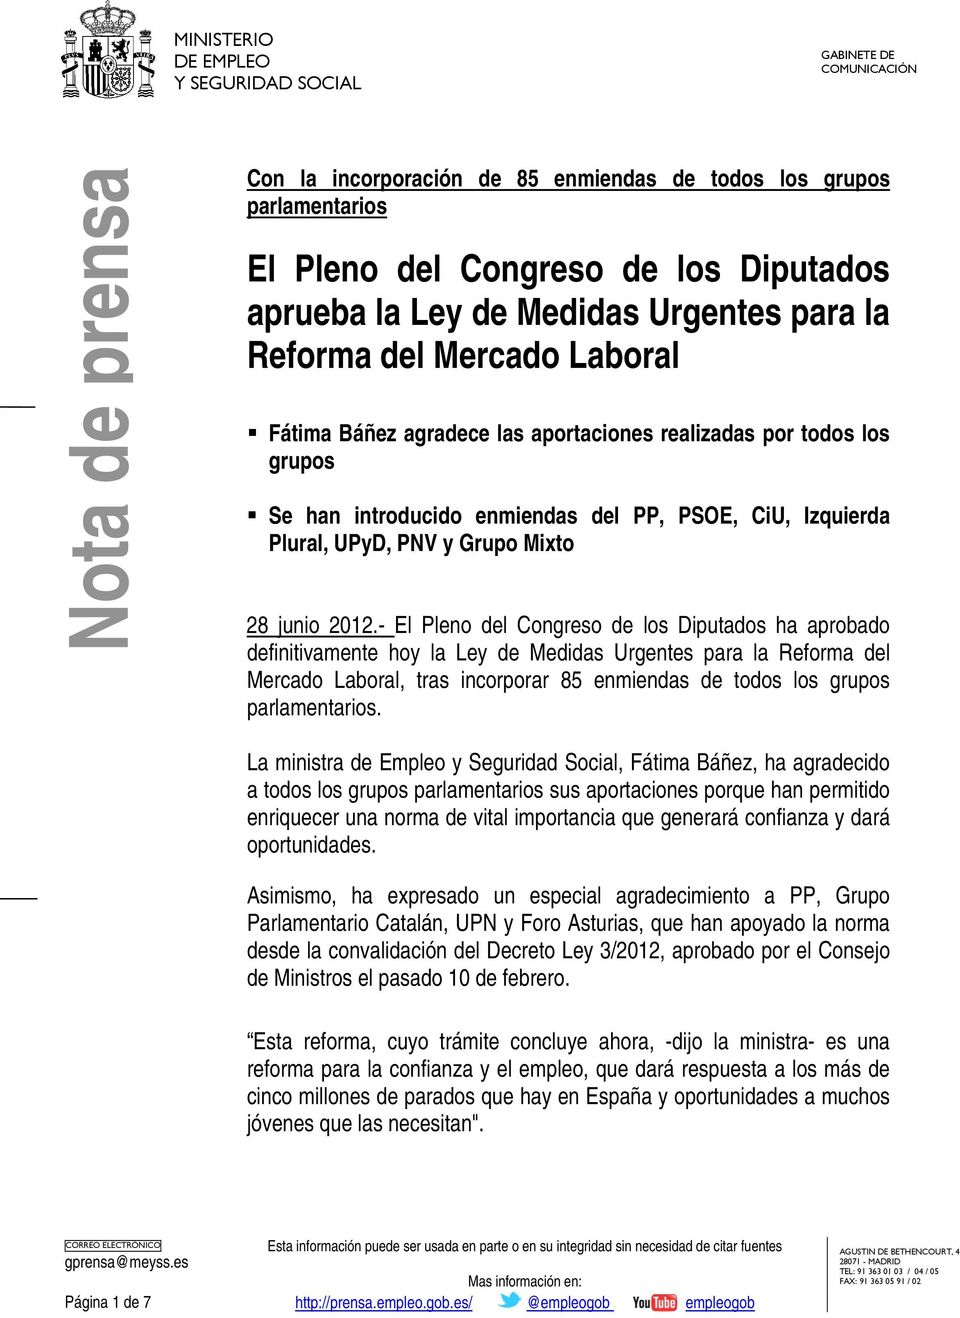 - El Pleno del Congreso de los Diputados ha aprobado definitivamente hoy la Ley de Medidas Urgentes para la Reforma del Mercado Laboral, tras incorporar 85 enmiendas de todos los grupos